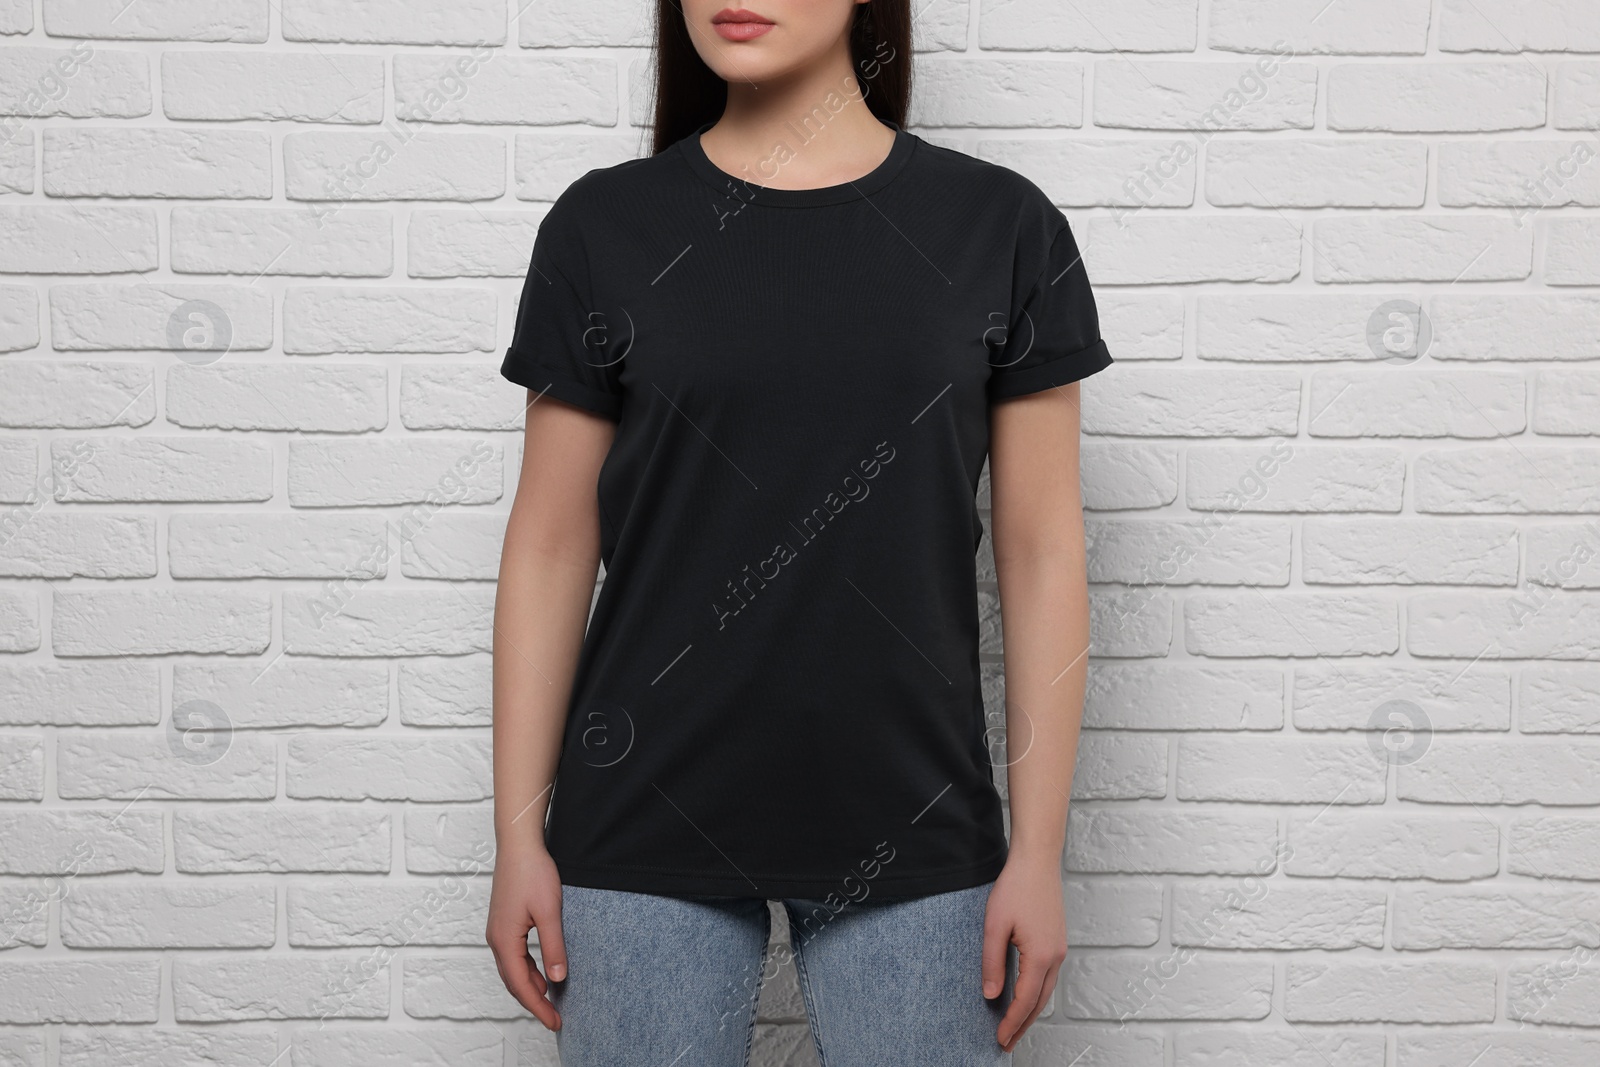 Photo of Woman wearing stylish black T-shirt near white brick wall, closeup